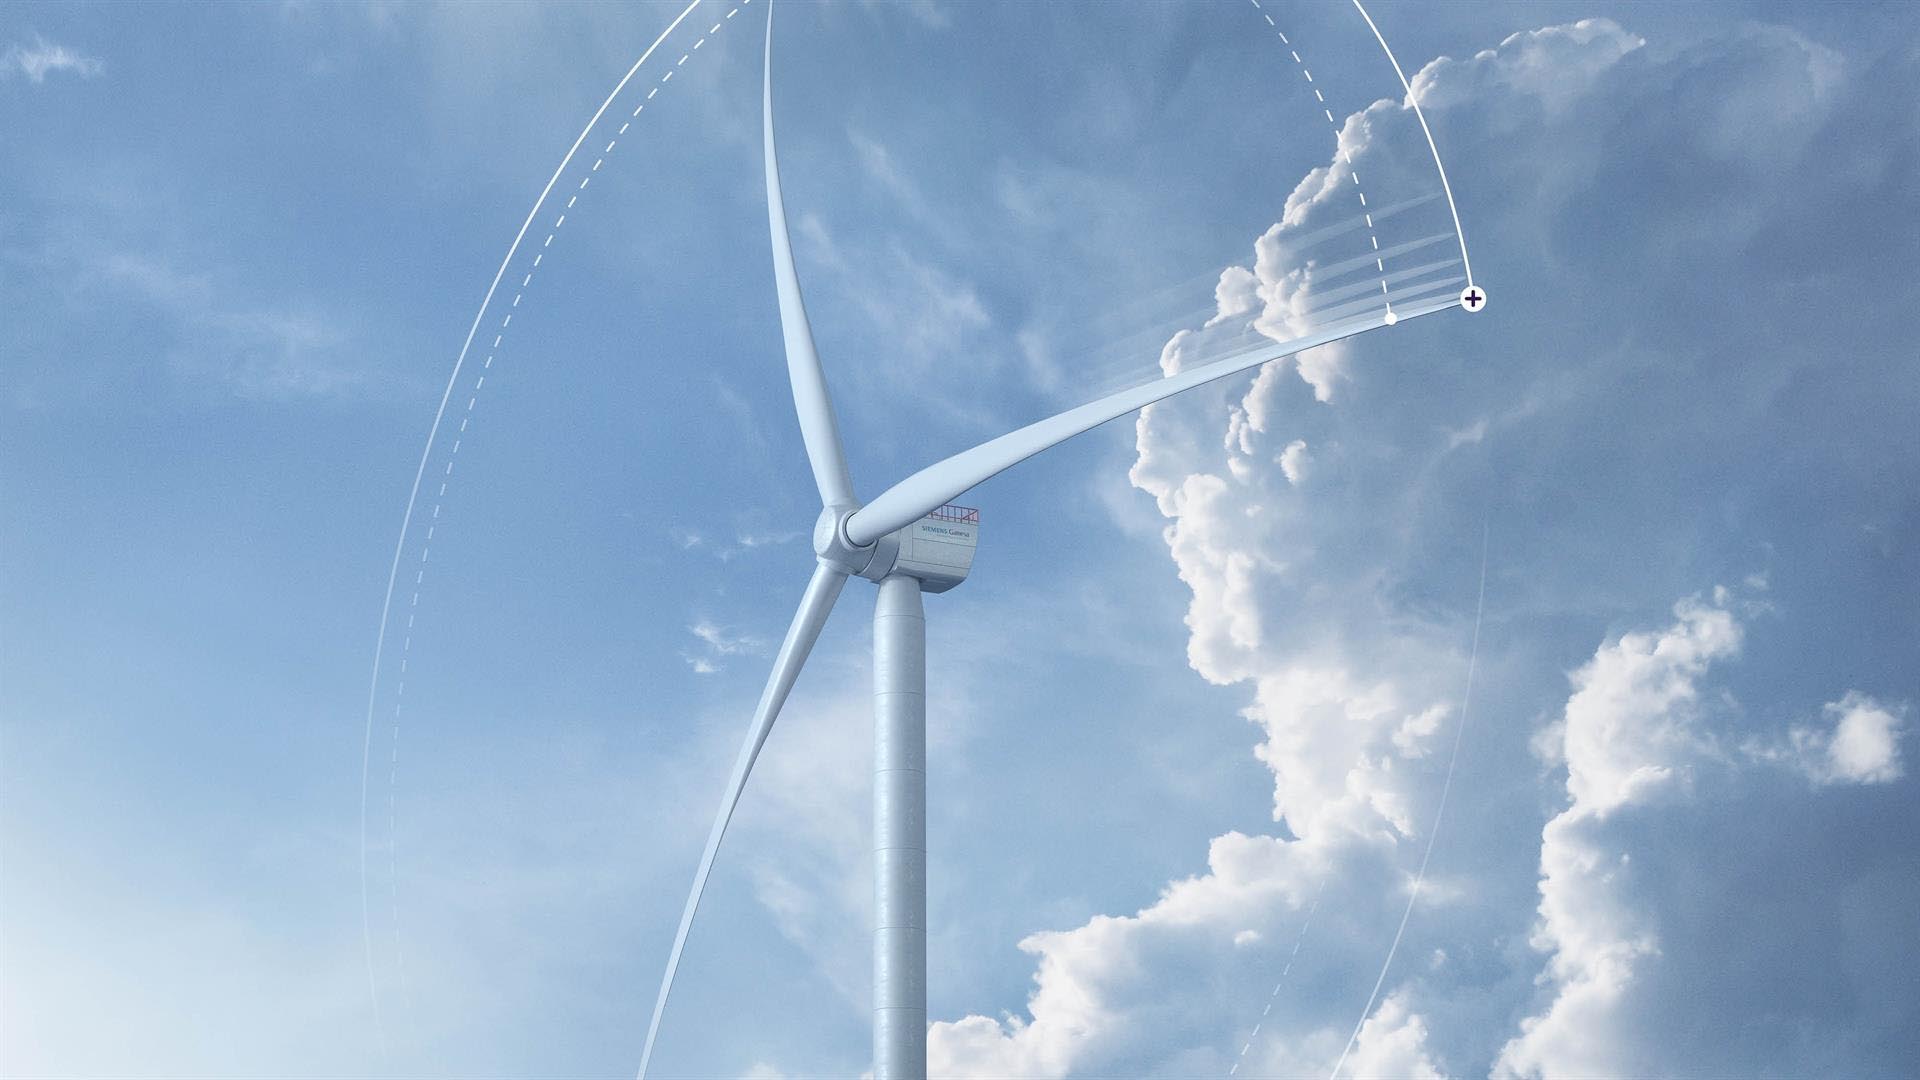 Acuerdo de Siemens Gamesa y Vattenfall para el proyecto Norfolk, que suministrará energía limpia a 4 millones de hogares británicos